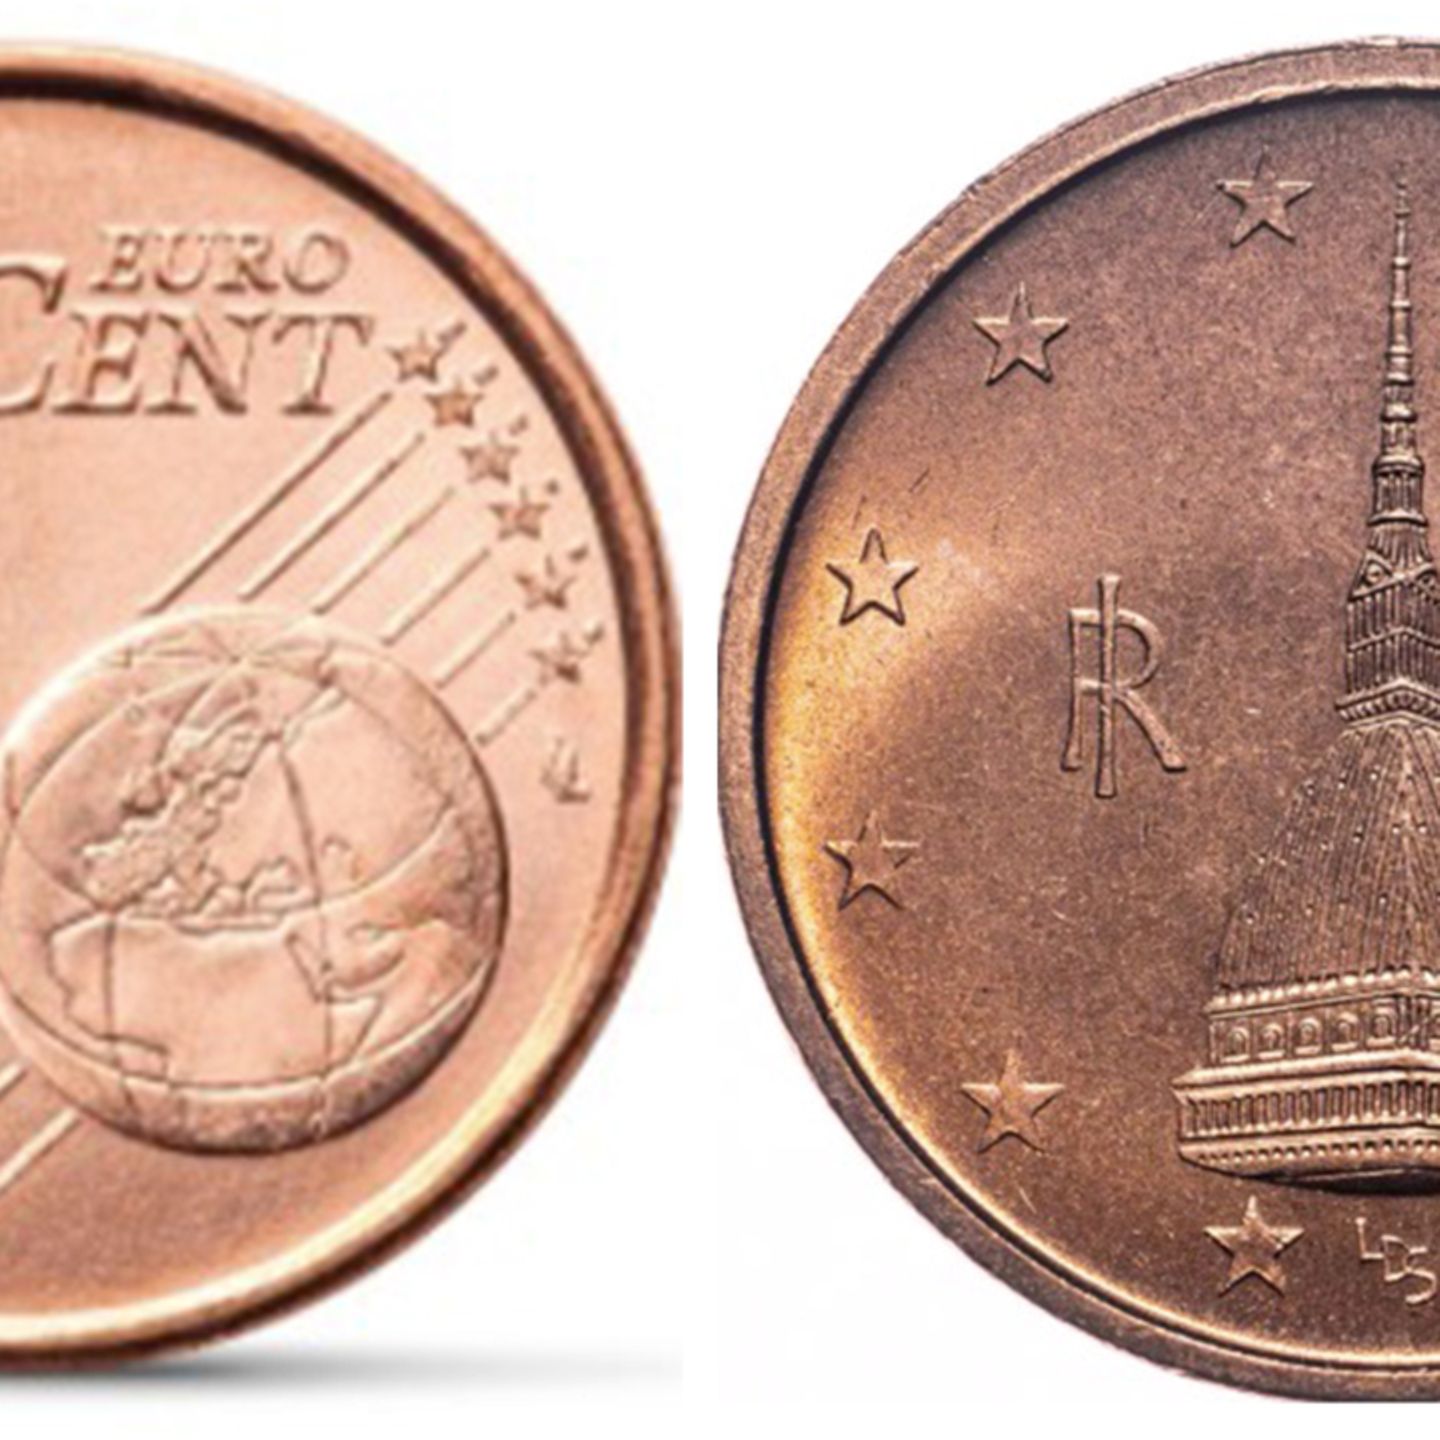 Diese 1-Eurocent-Münze ist ein kleines Vermögen wert: Besitzen Sie sie?